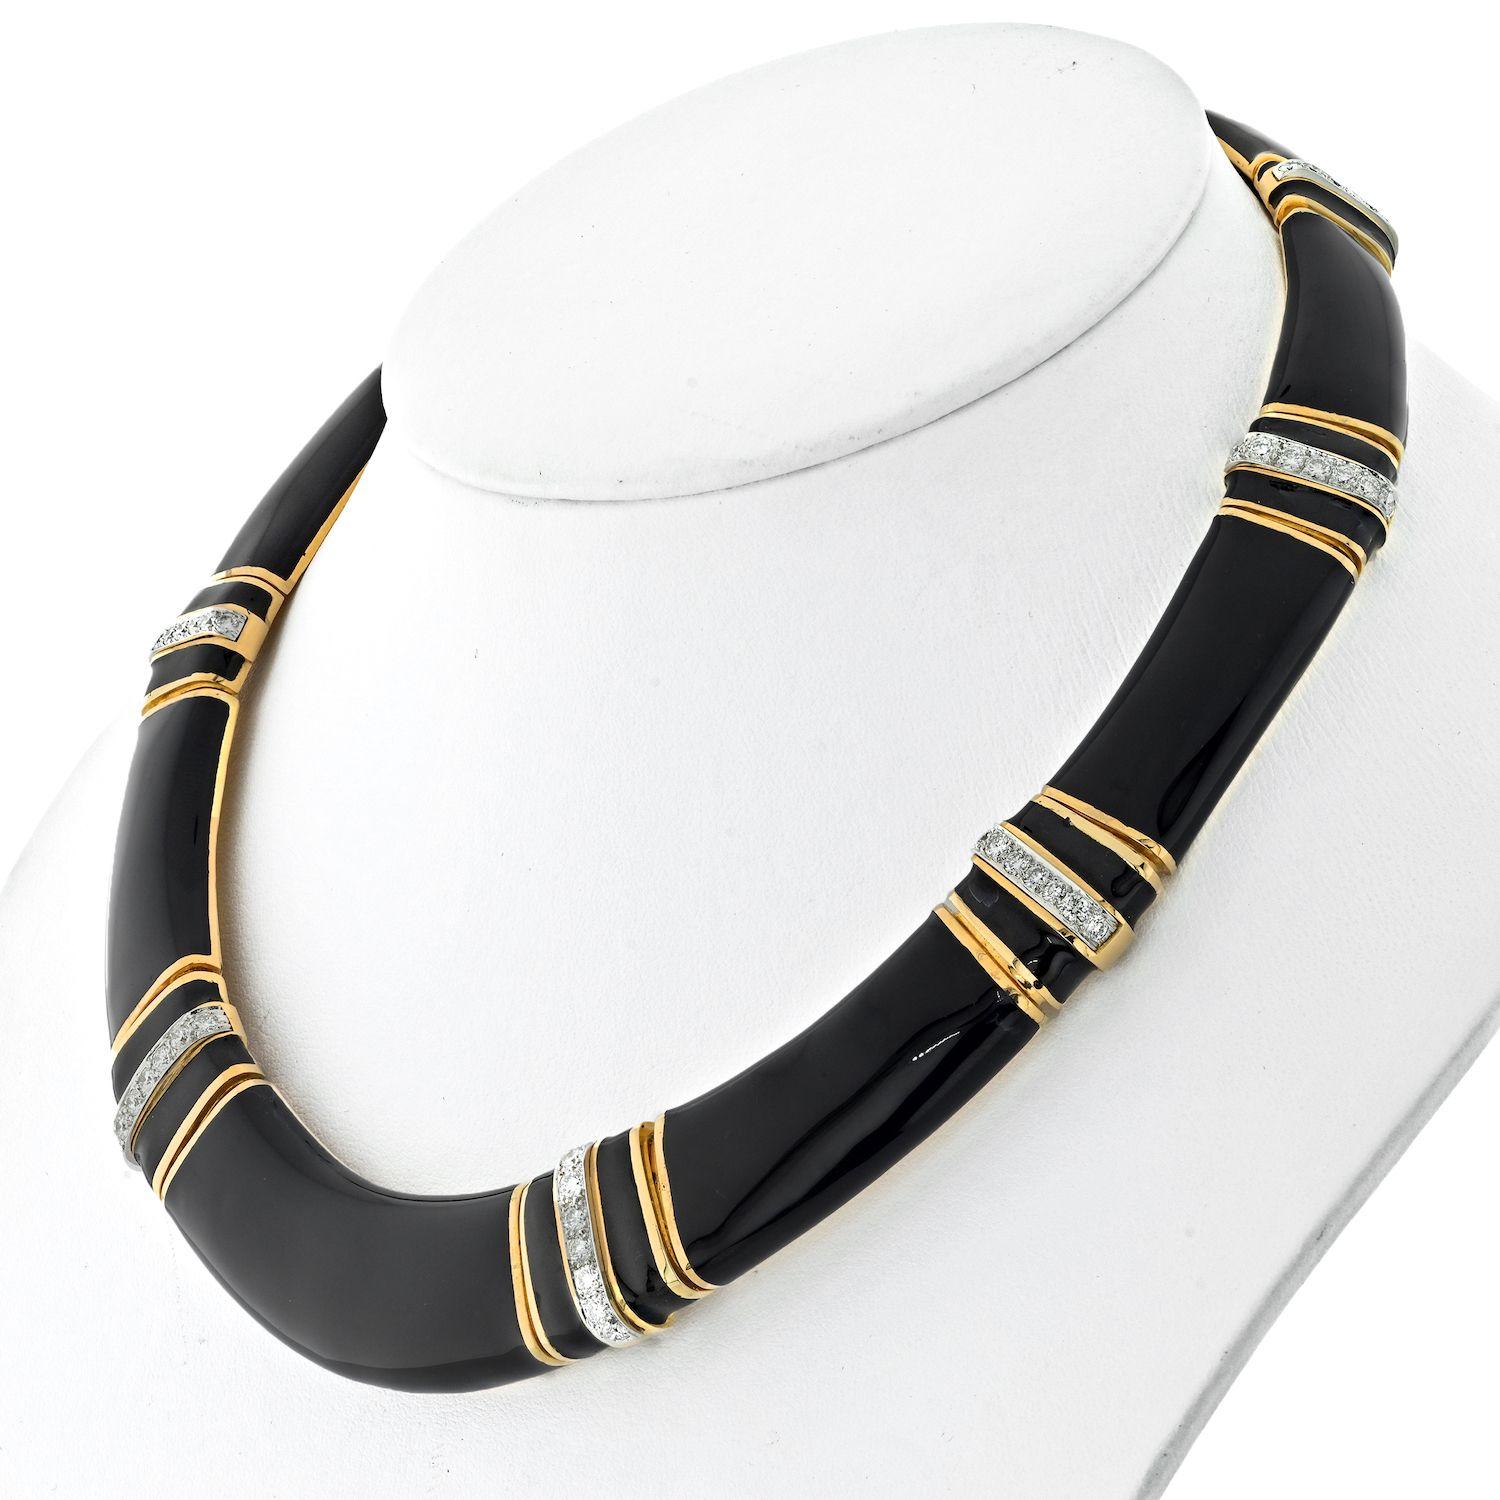 Die David Webb 18K Yellow Gold Black Enamel Collar Necklace ist ein atemberaubendes Schmuckstück, das den charakteristischen Stil und die Liebe zum Detail der Marke unterstreicht. Diese Halskette aus 18 Karat Gelbgold ist mit schwarzer Emaille